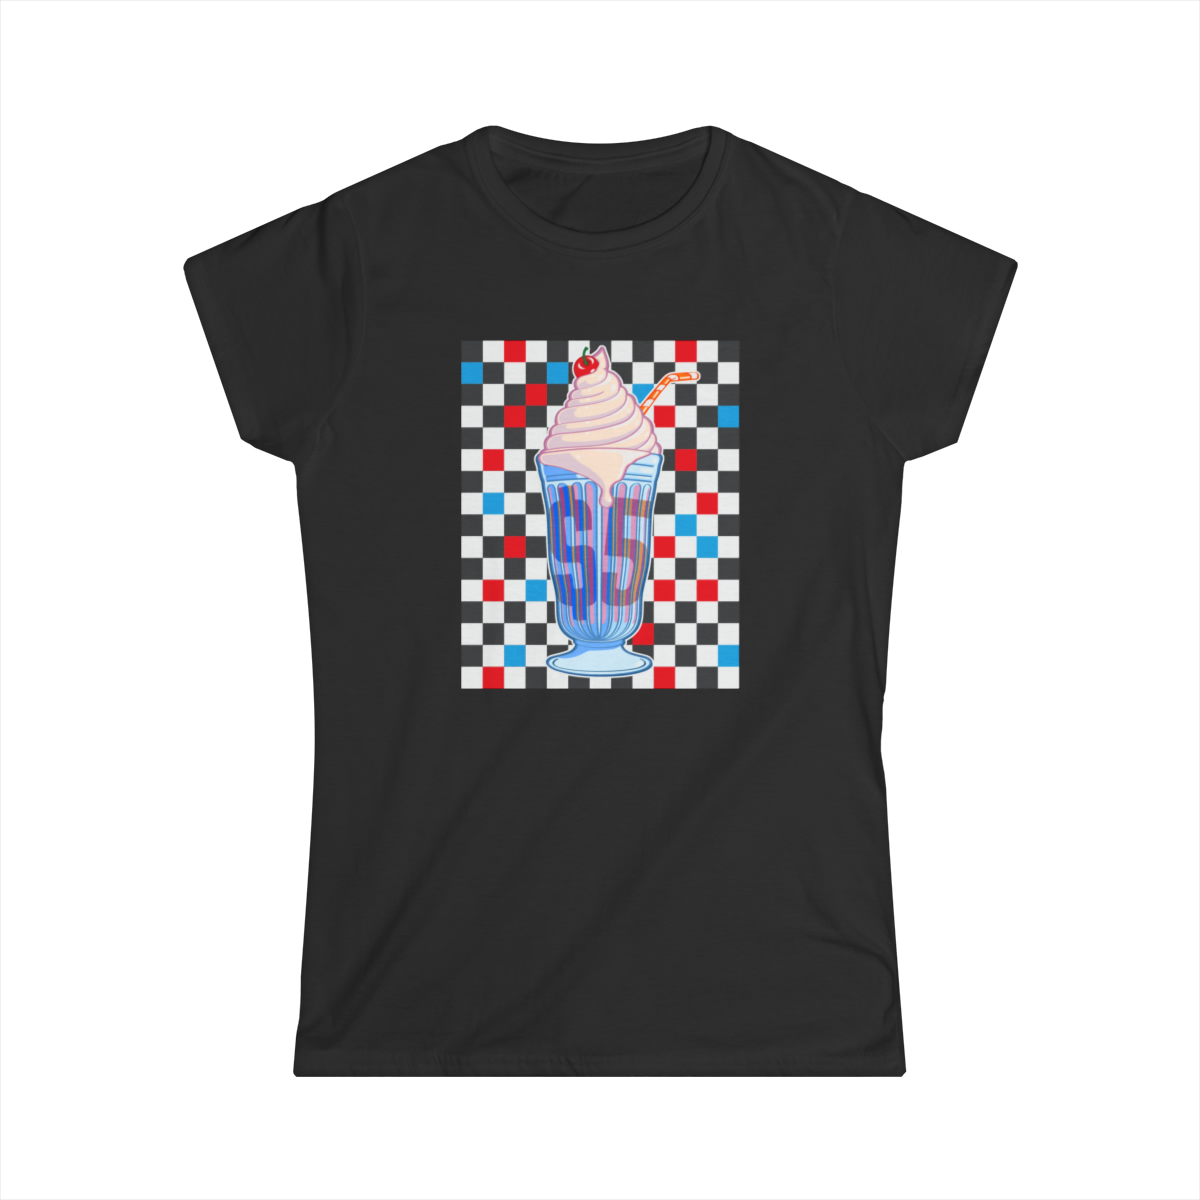 Milkshake (checkers) - Women's Softstyle Tee